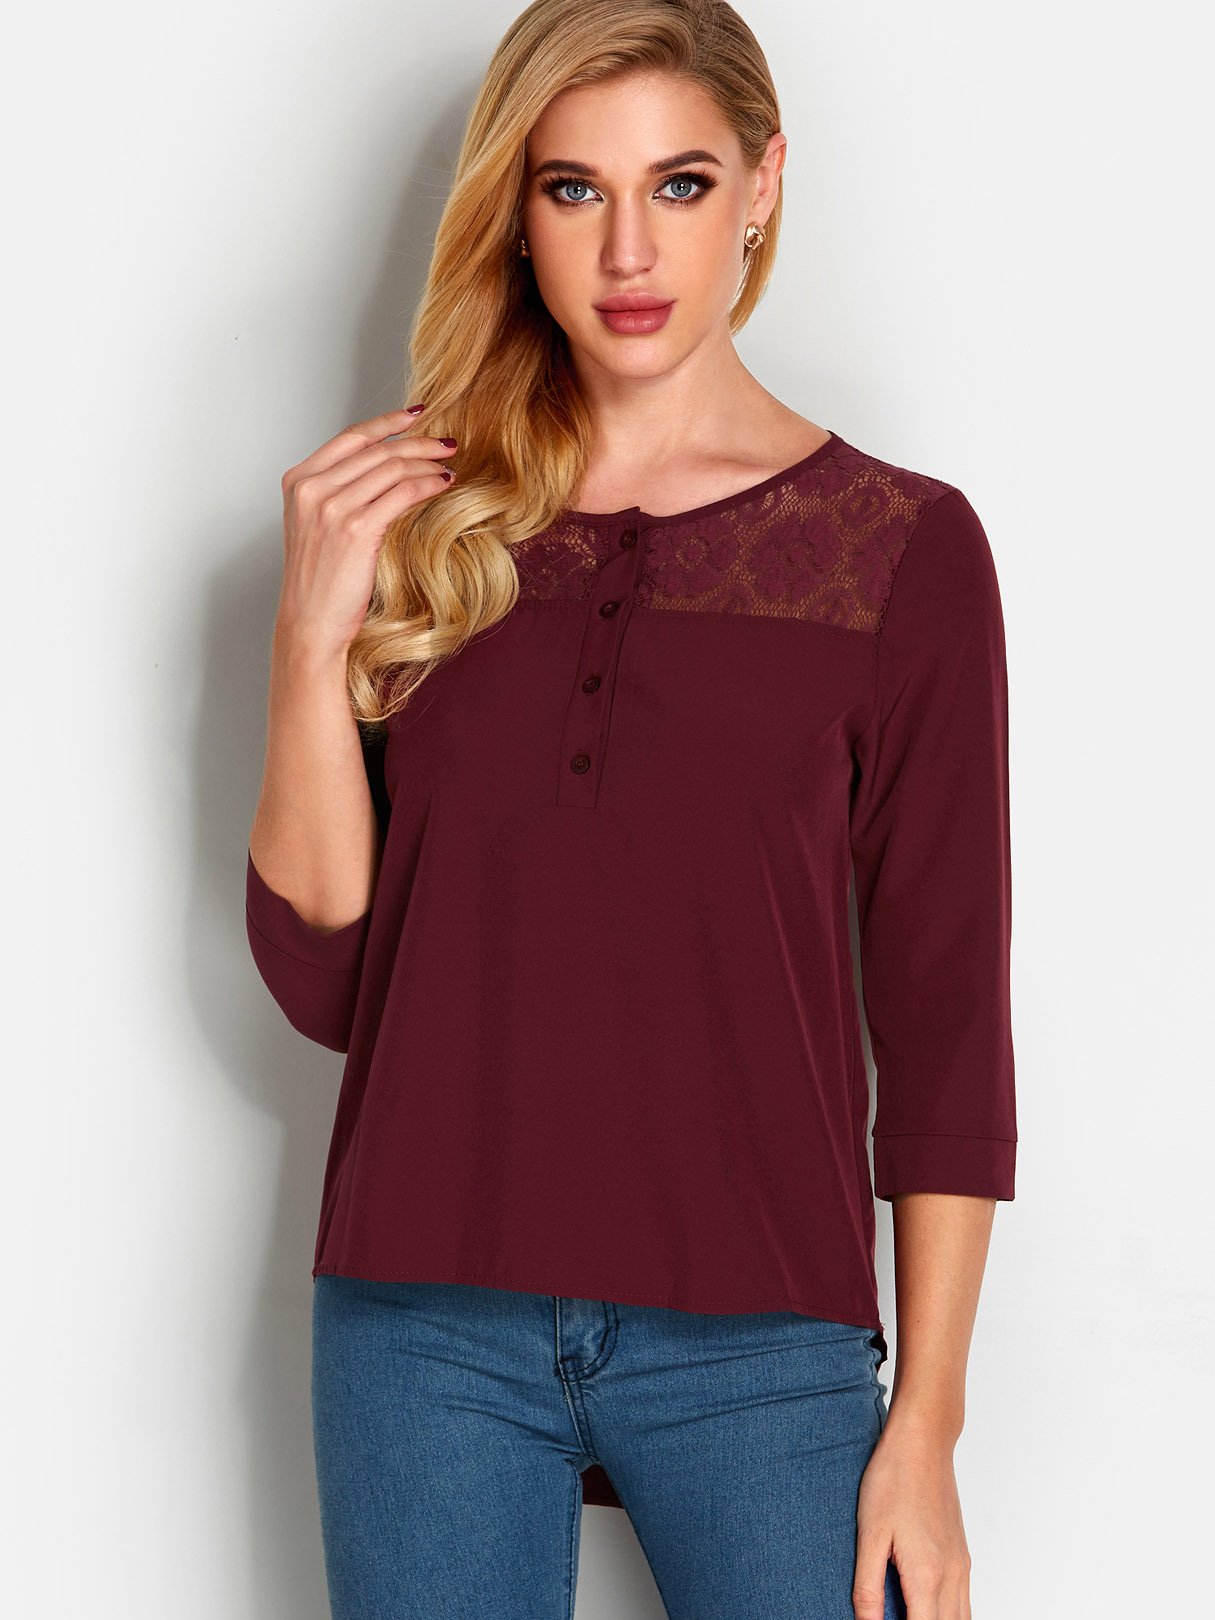 Wholesale Round Neck Lace 3/4 Sleeve Irregular Hem Burgundy T-Shirts